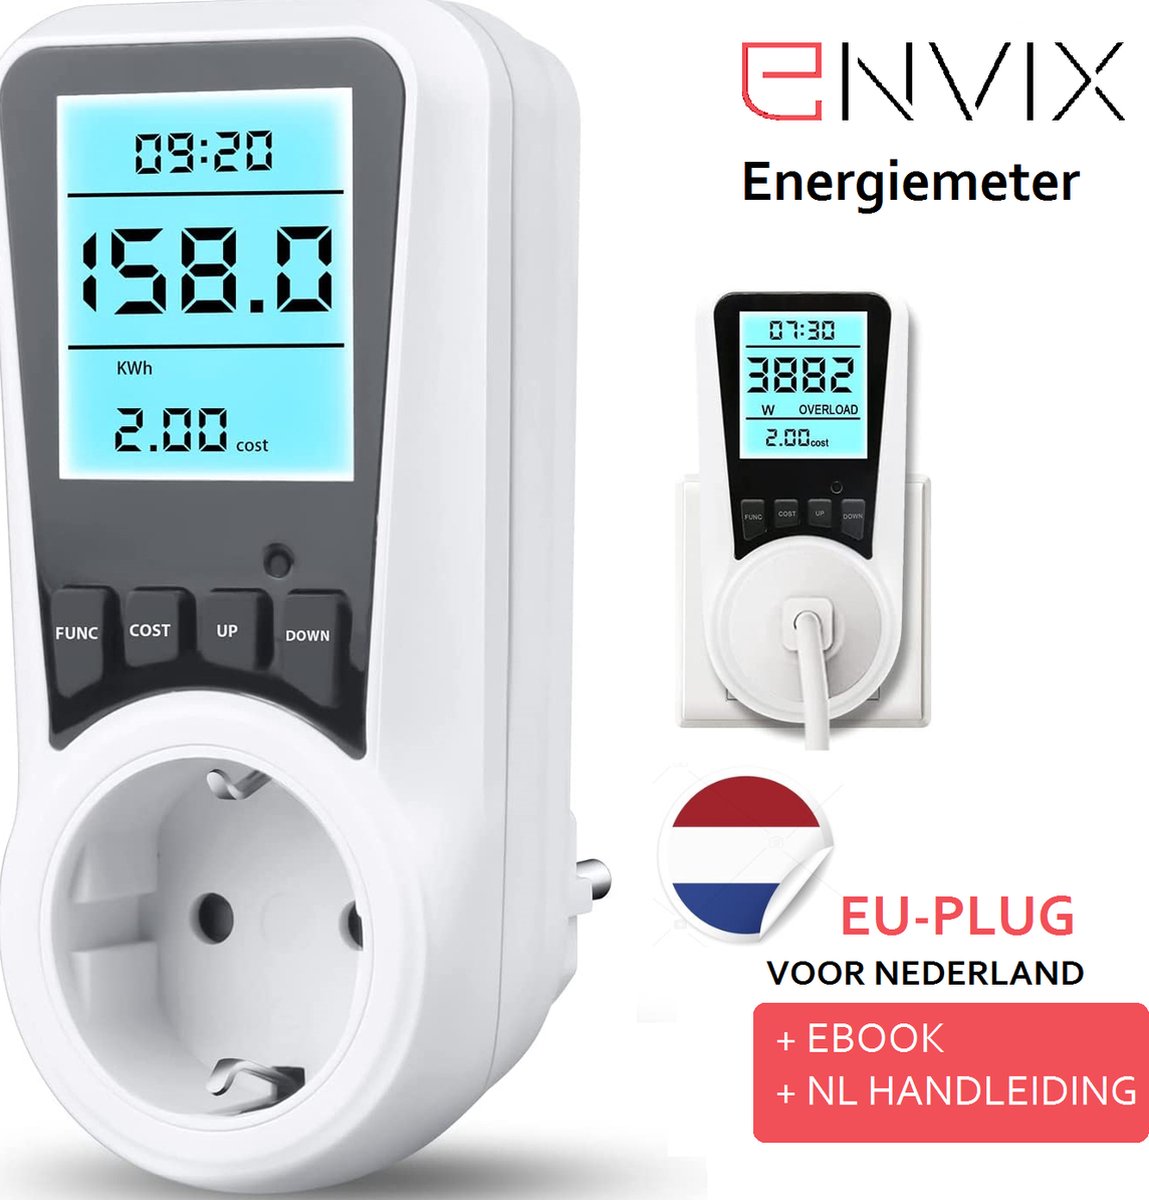 Envix energiemeter verbruiksmeter - energieverbruiksmeter - stroommeter - KWh meter - Energiemeter stopcontact - Elektriciteitsmeter - Nederlandse handleiding + ebook